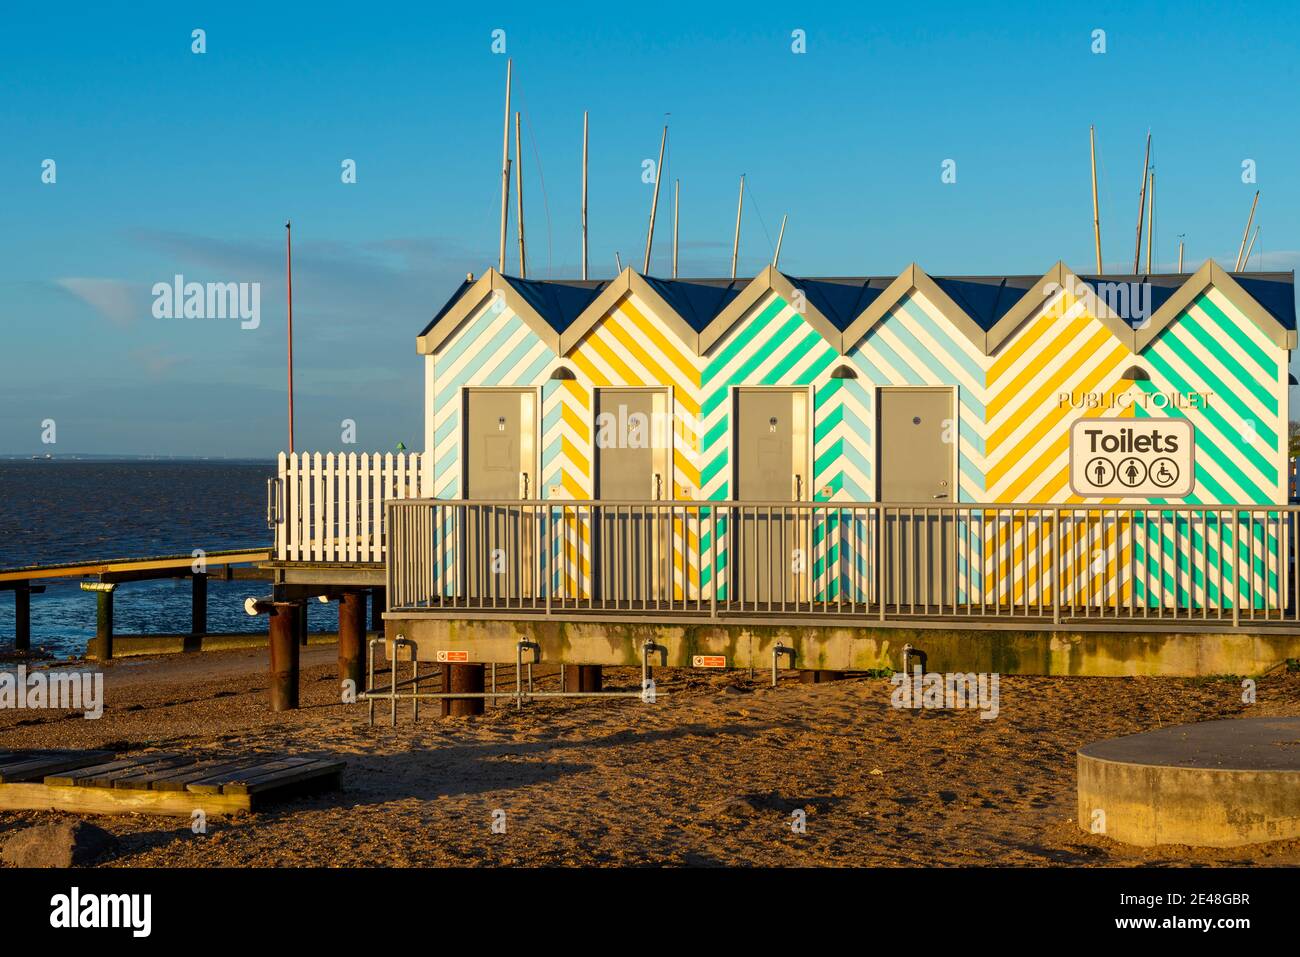 Bunte Toiletten auf Southend on Sea, Essex, UK Strandpromenade im Stil von hölzernen Strandhütten. Einrichtungen der Western Esplanade. Annehmlichkeiten am Strand Stockfoto